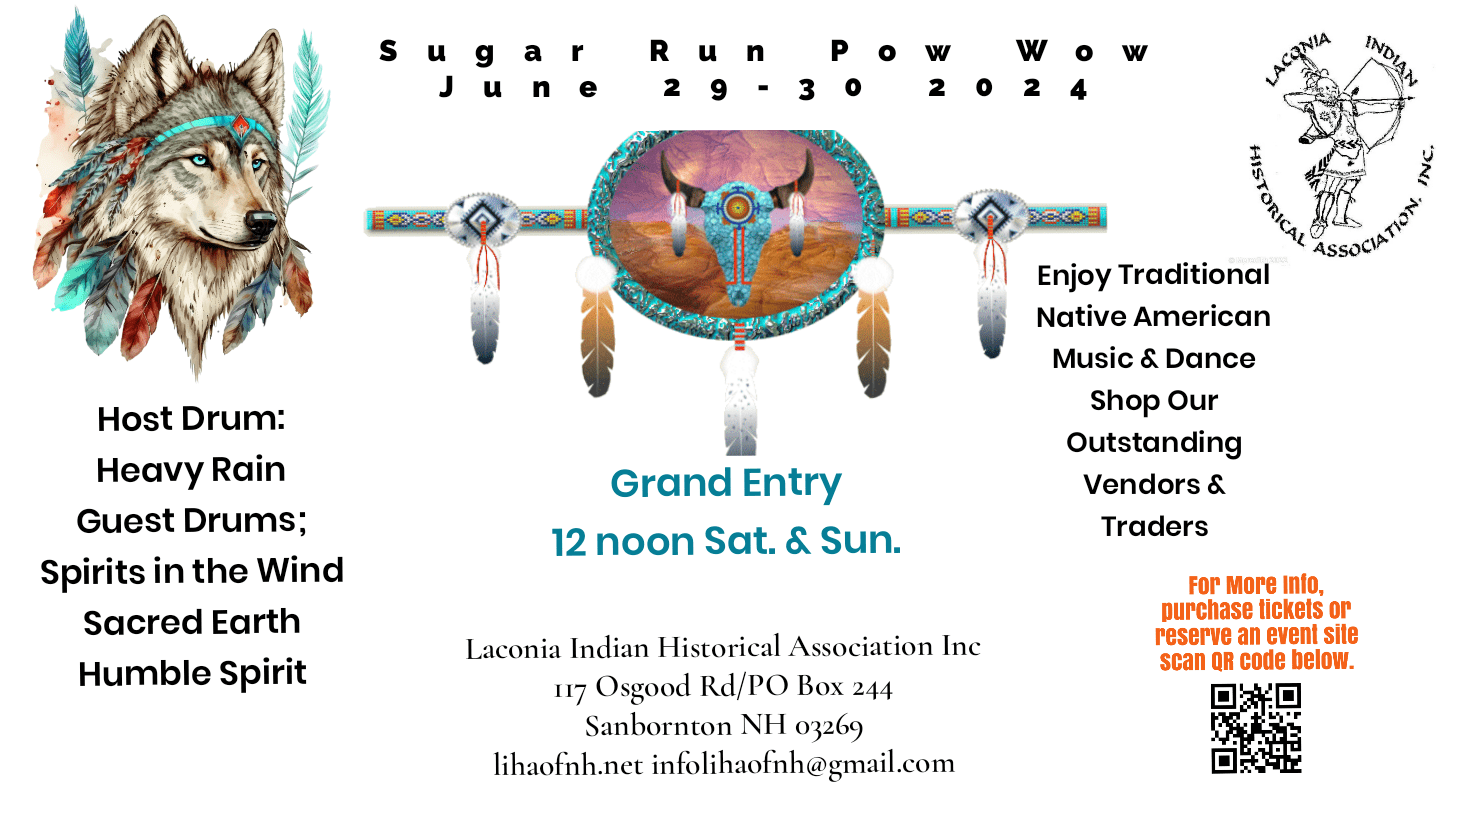 Sugar Run Powwow